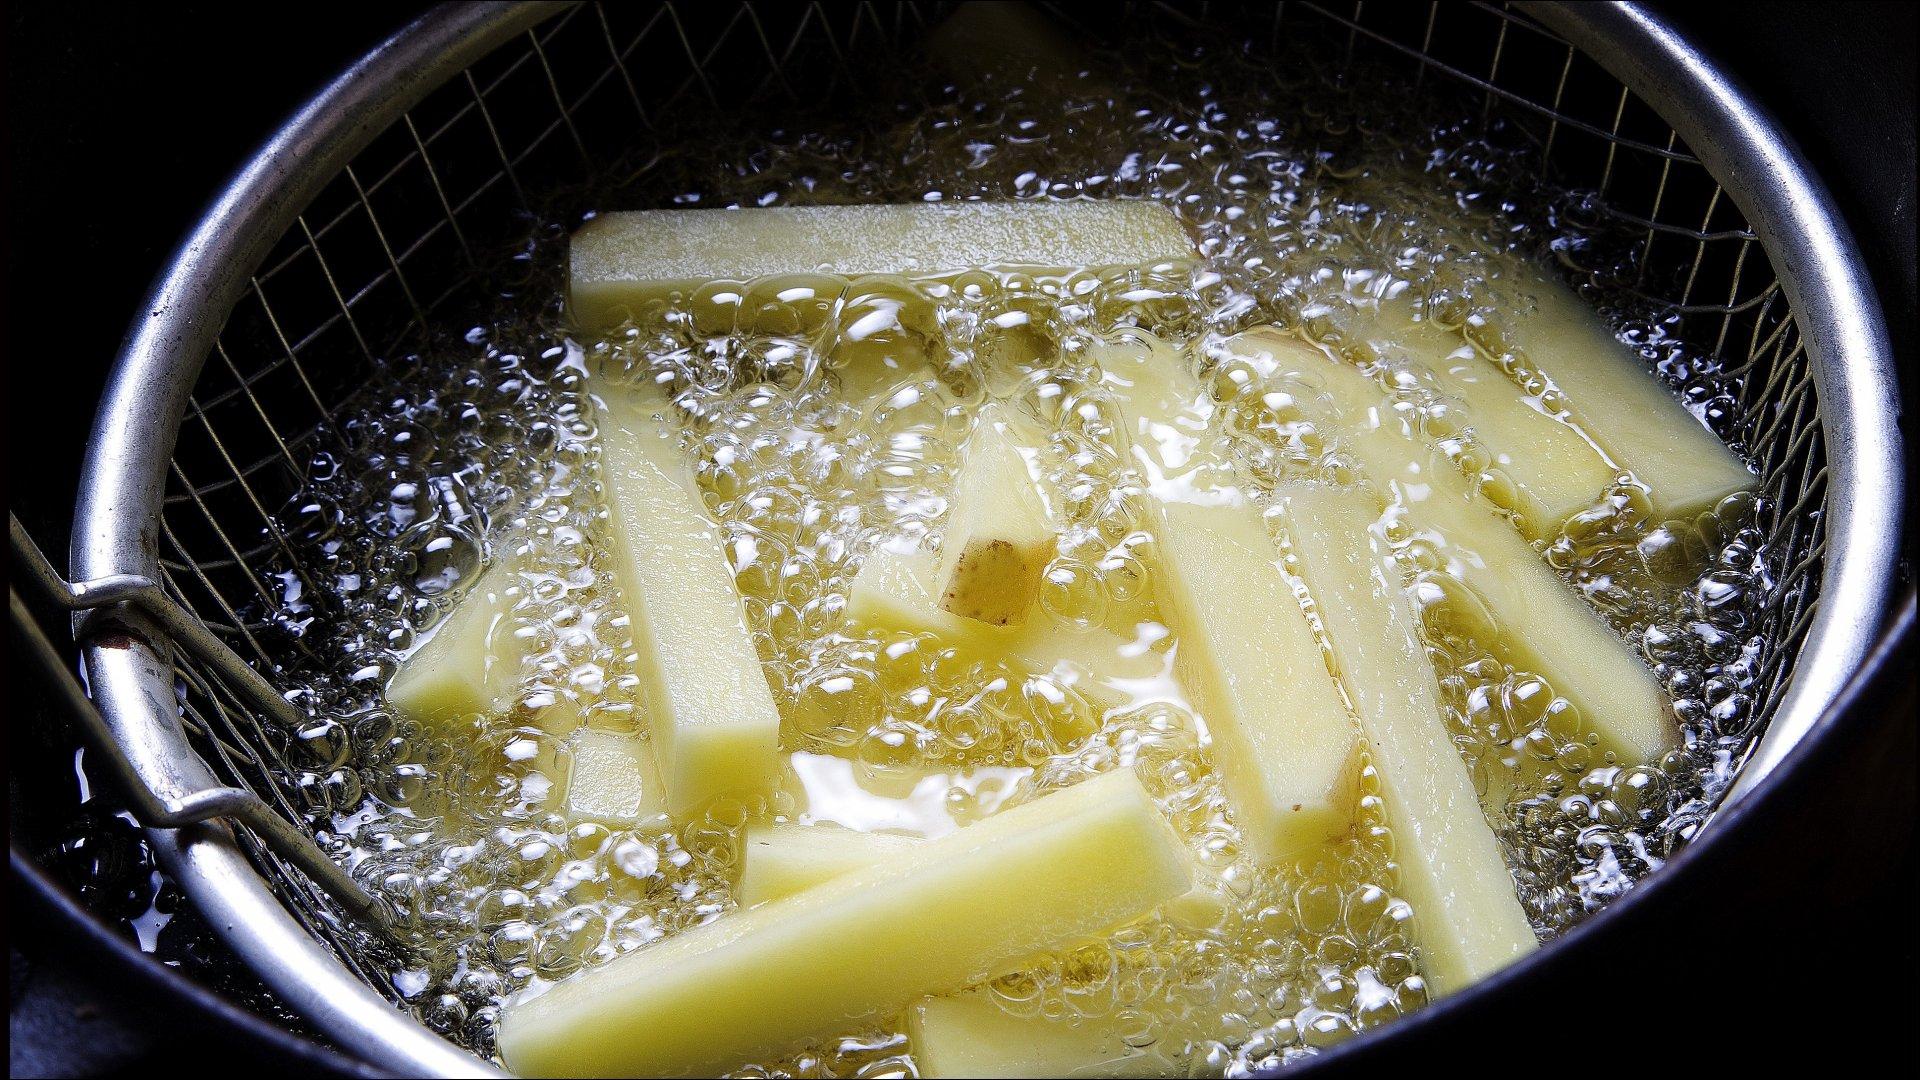 Vask og rens potetene, del de opp i passende staver. Velg en potetsort som egner seg til frityrsteking, for eksempel Peik eller Beate. Varm frityrolje i en gryte. Prøv temperaturen med en potetbit, når det bruser rund biten er oljen klar til fritering. Oljetemperatur ca. 180 grader.
Legg potetstavene i en trådkurv og stek i oljen til potetene har fått en gylden farge. Del opp porsjonen slik at du ikke får for mye poteter i gryten på én gang, rist litt på kurven for å få en jevn steking av bitene. Legg de ferdig friterte potetene på kjøkkenpapir til fettavrenning. Strø over litt salt like før servering. Den ferdigfriterte poteten kan holdes varm i komfyren, varmluft på 120 grader.